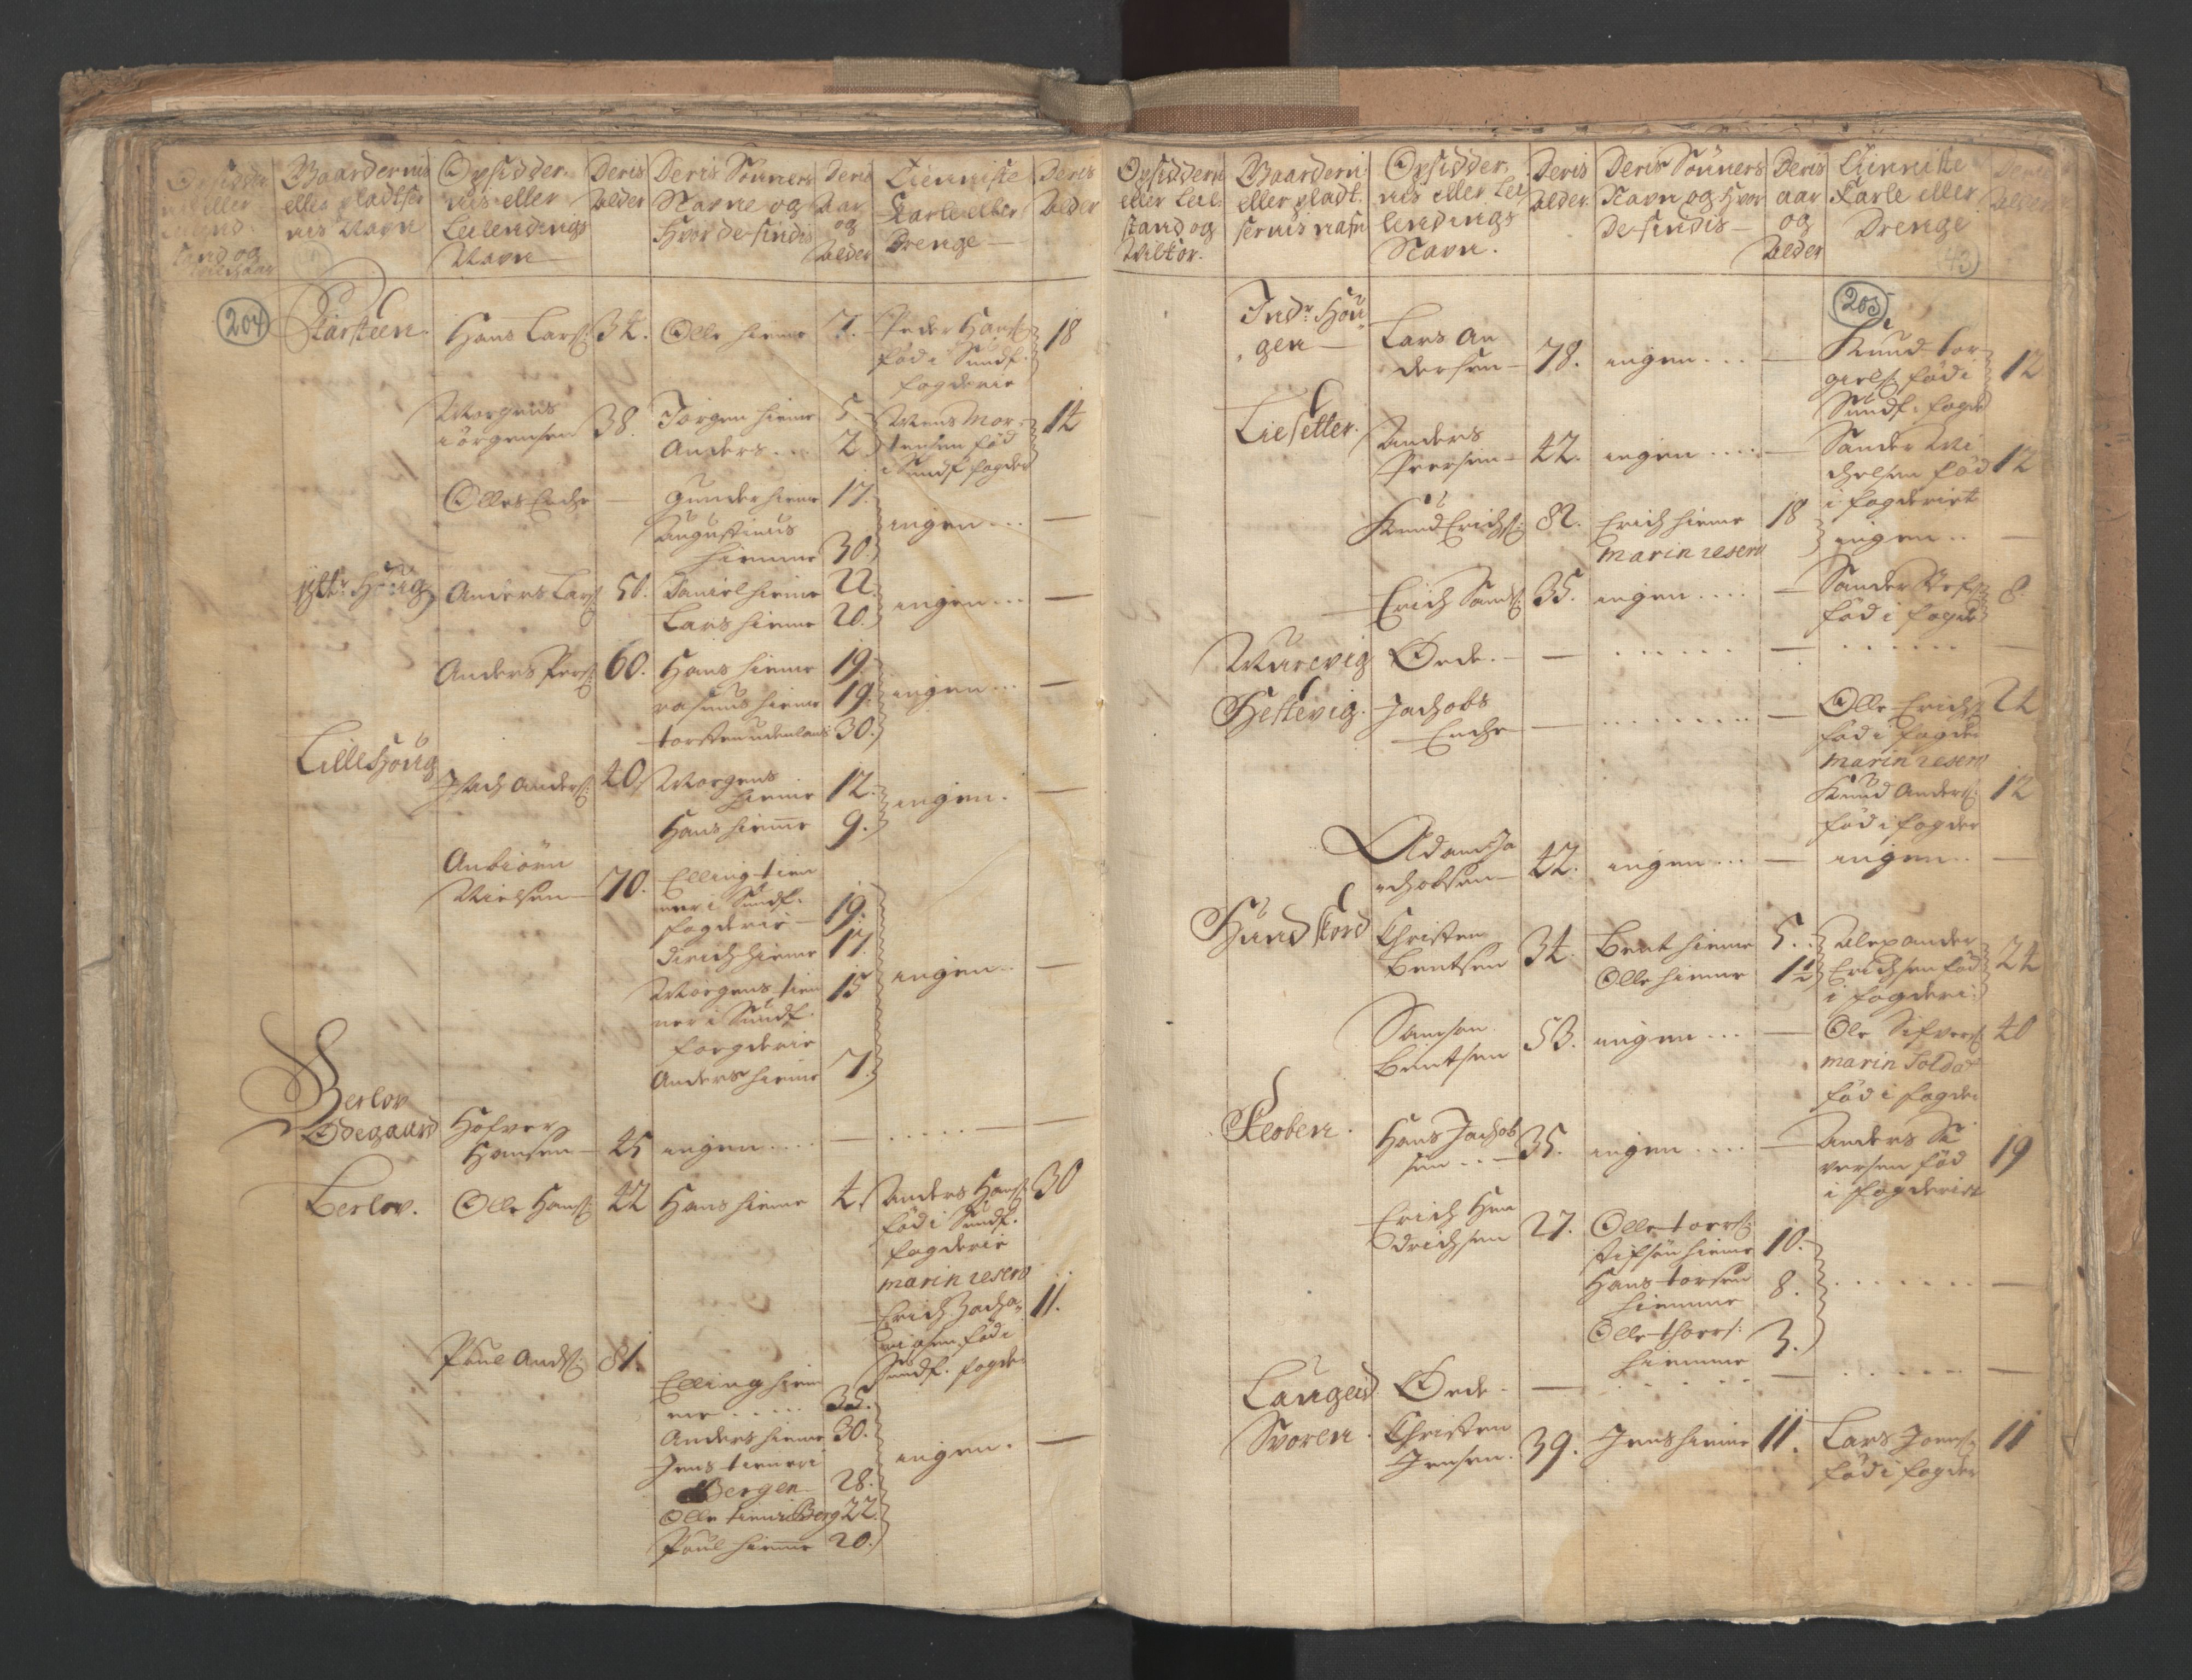 RA, Manntallet 1701, nr. 9: Sunnfjord fogderi, Nordfjord fogderi og Svanø birk, 1701, s. 204-205